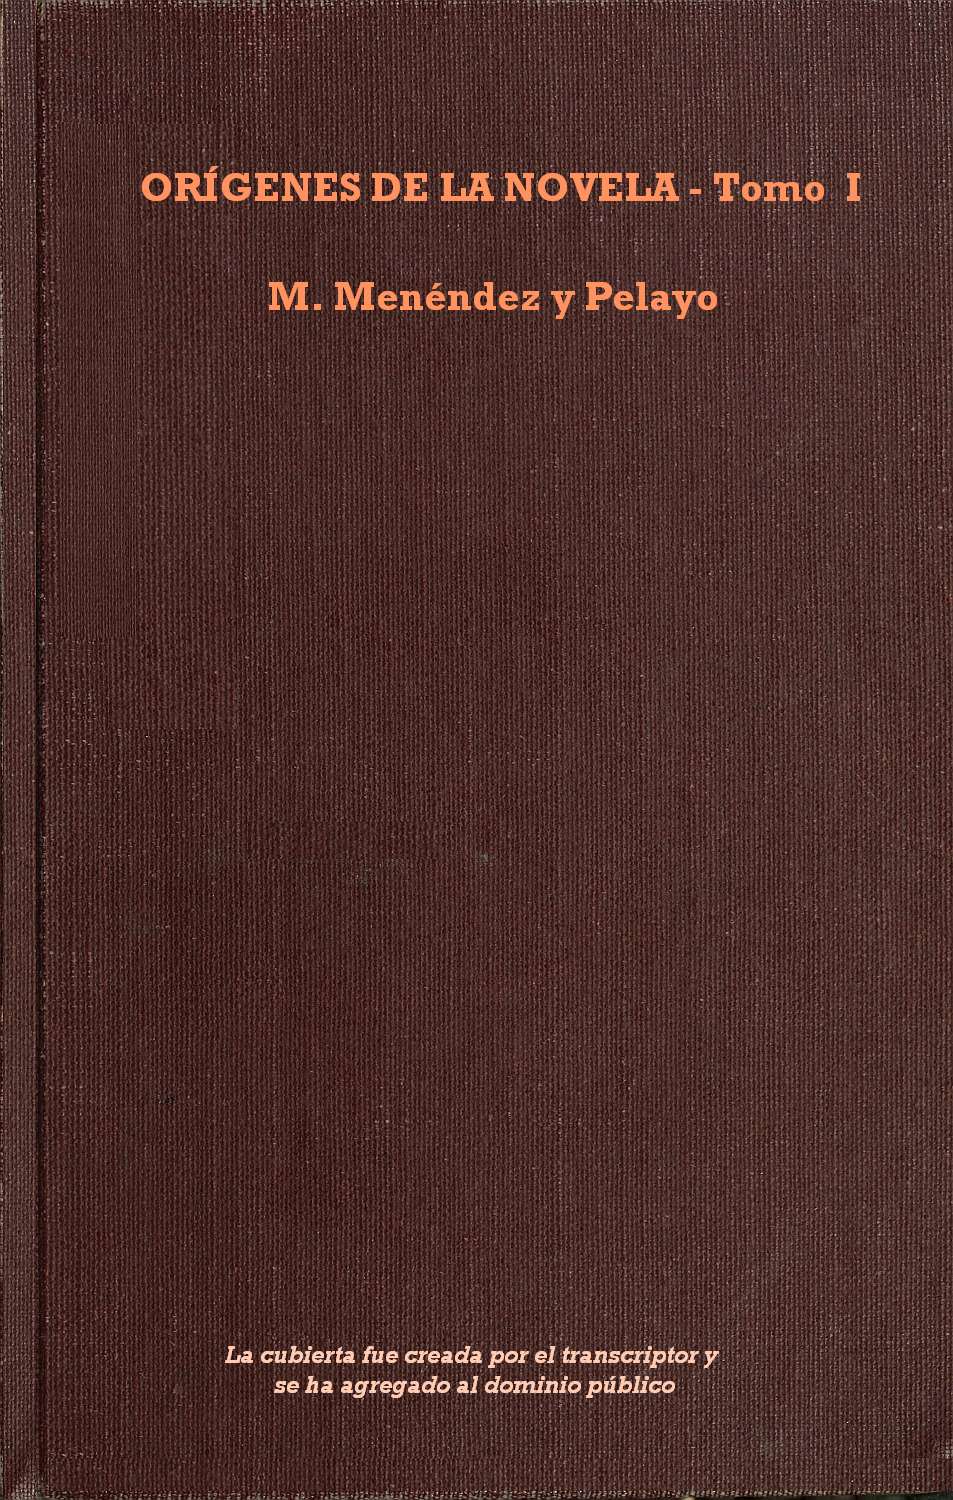 Orígenes de la novela, Tomo 1, by Marcelino Menéndez y Pelayo—A Project  Gutenberg eBook